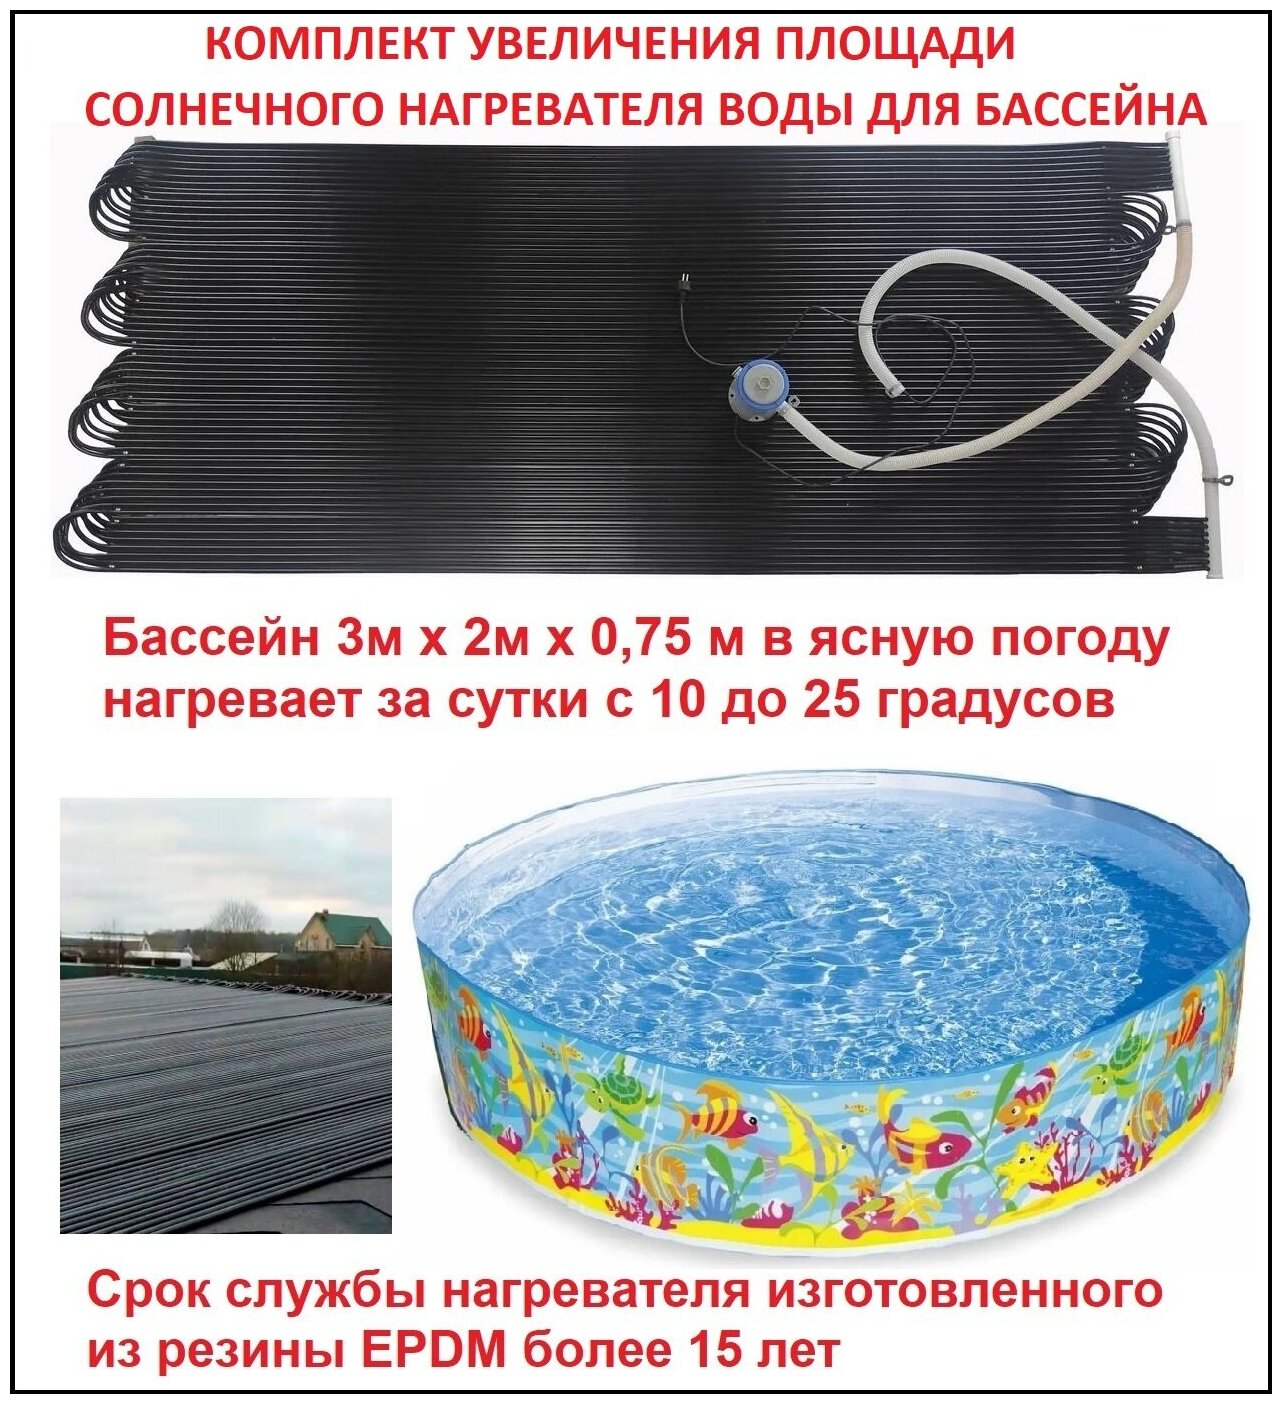 Комплект увеличения площади солнечного нагревателя воды Warmpool для бассейна 1 штука